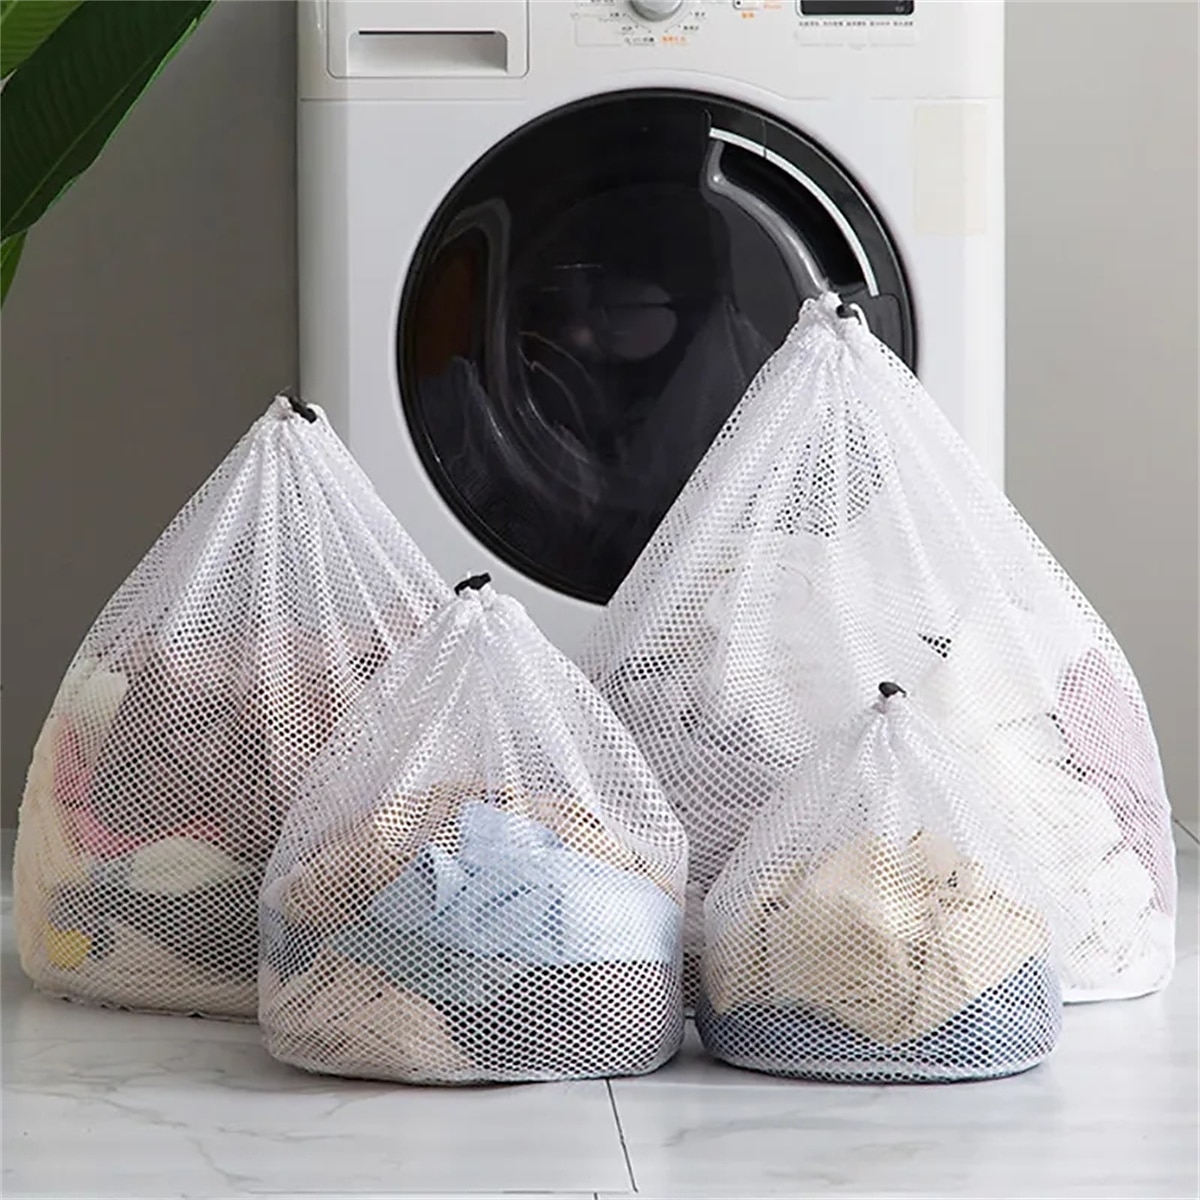 1PC Drawstring Mesh Underwear Laundry Basket Washing Bags